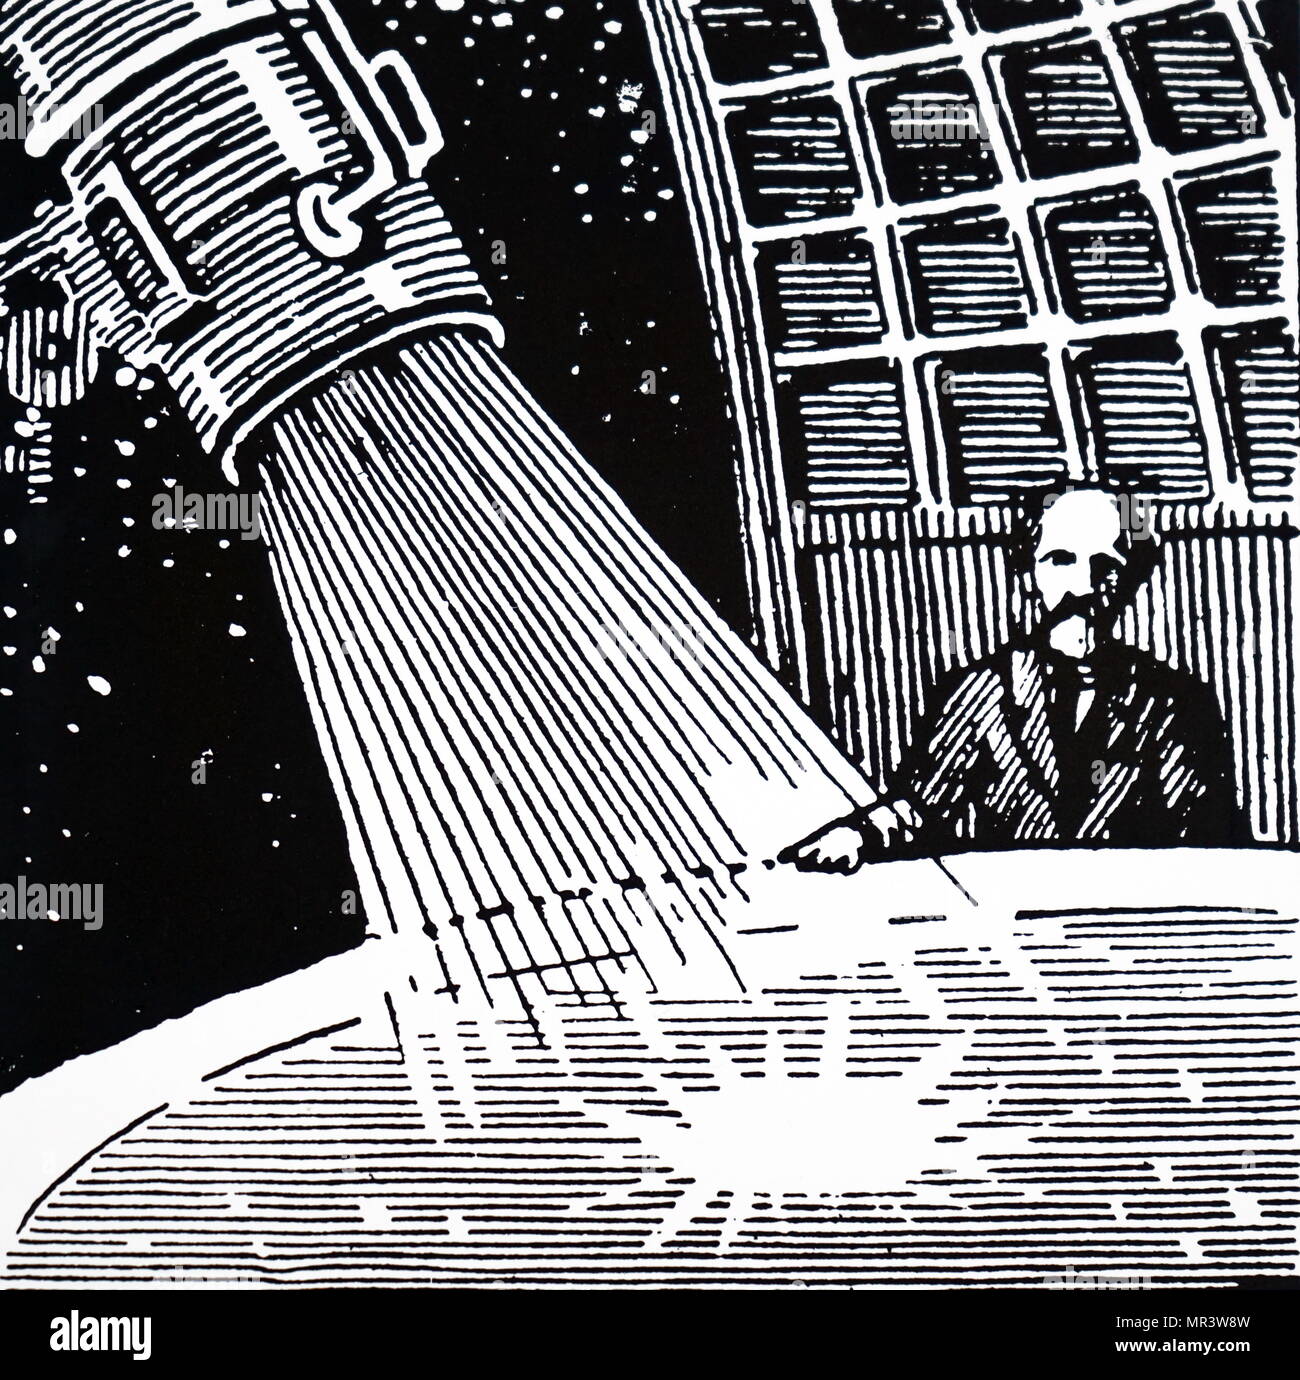 Título de un artículo de Robert H. Goddard y su rocket publicado en Descubrimiento de Londres. Robert H. Goddard (1882-1945), un ingeniero norteamericano, profesor, físico e inventor. Fecha siglo xx Foto de stock